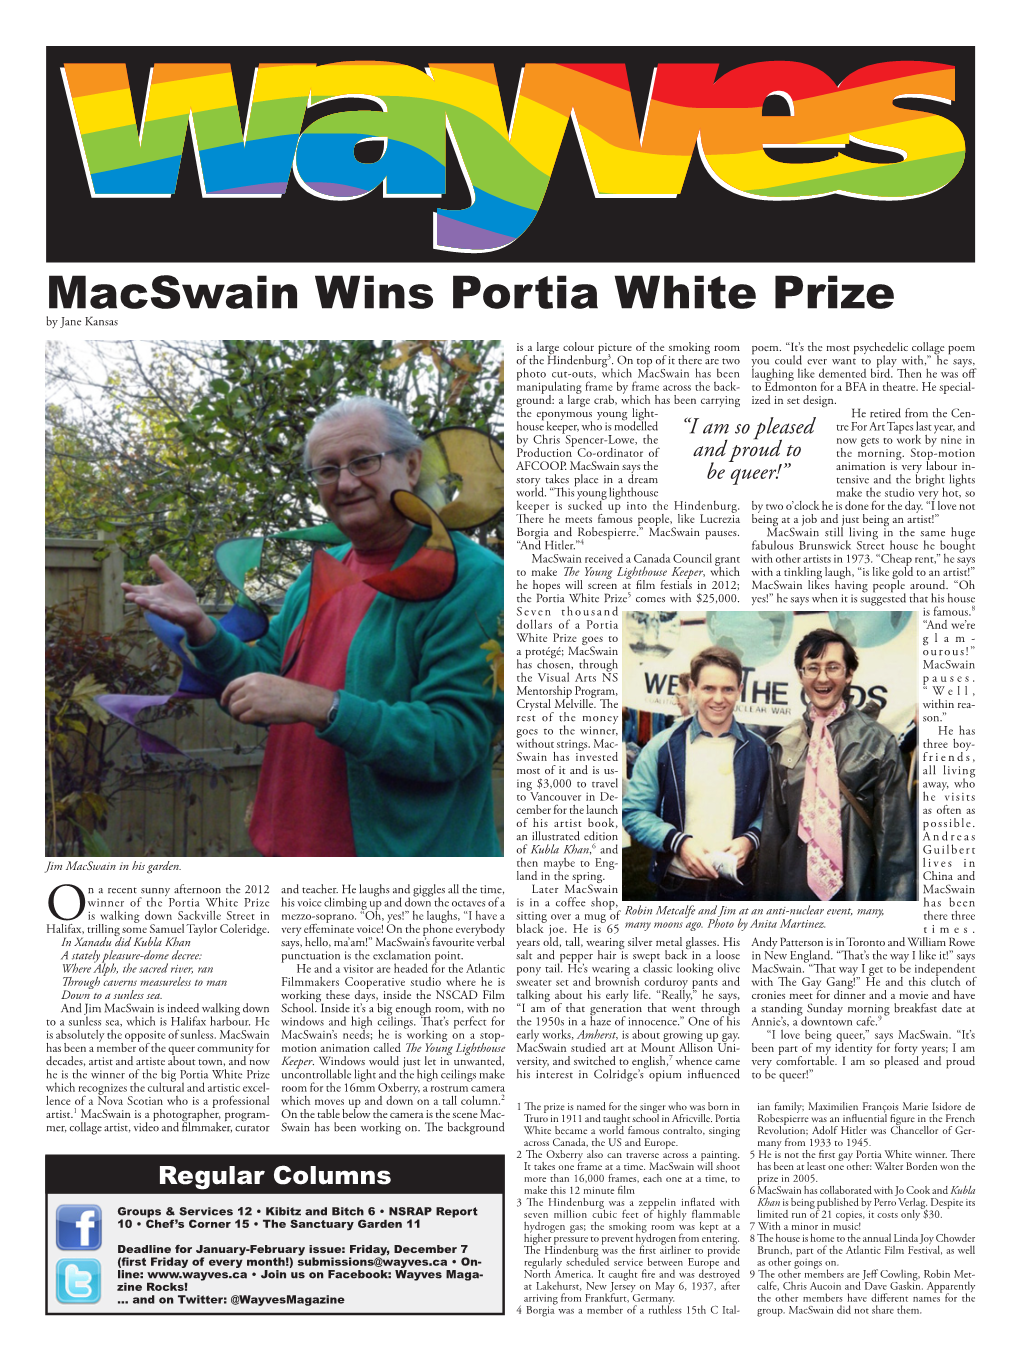 Macswain Wins Portia White Prize by Jane Kansas